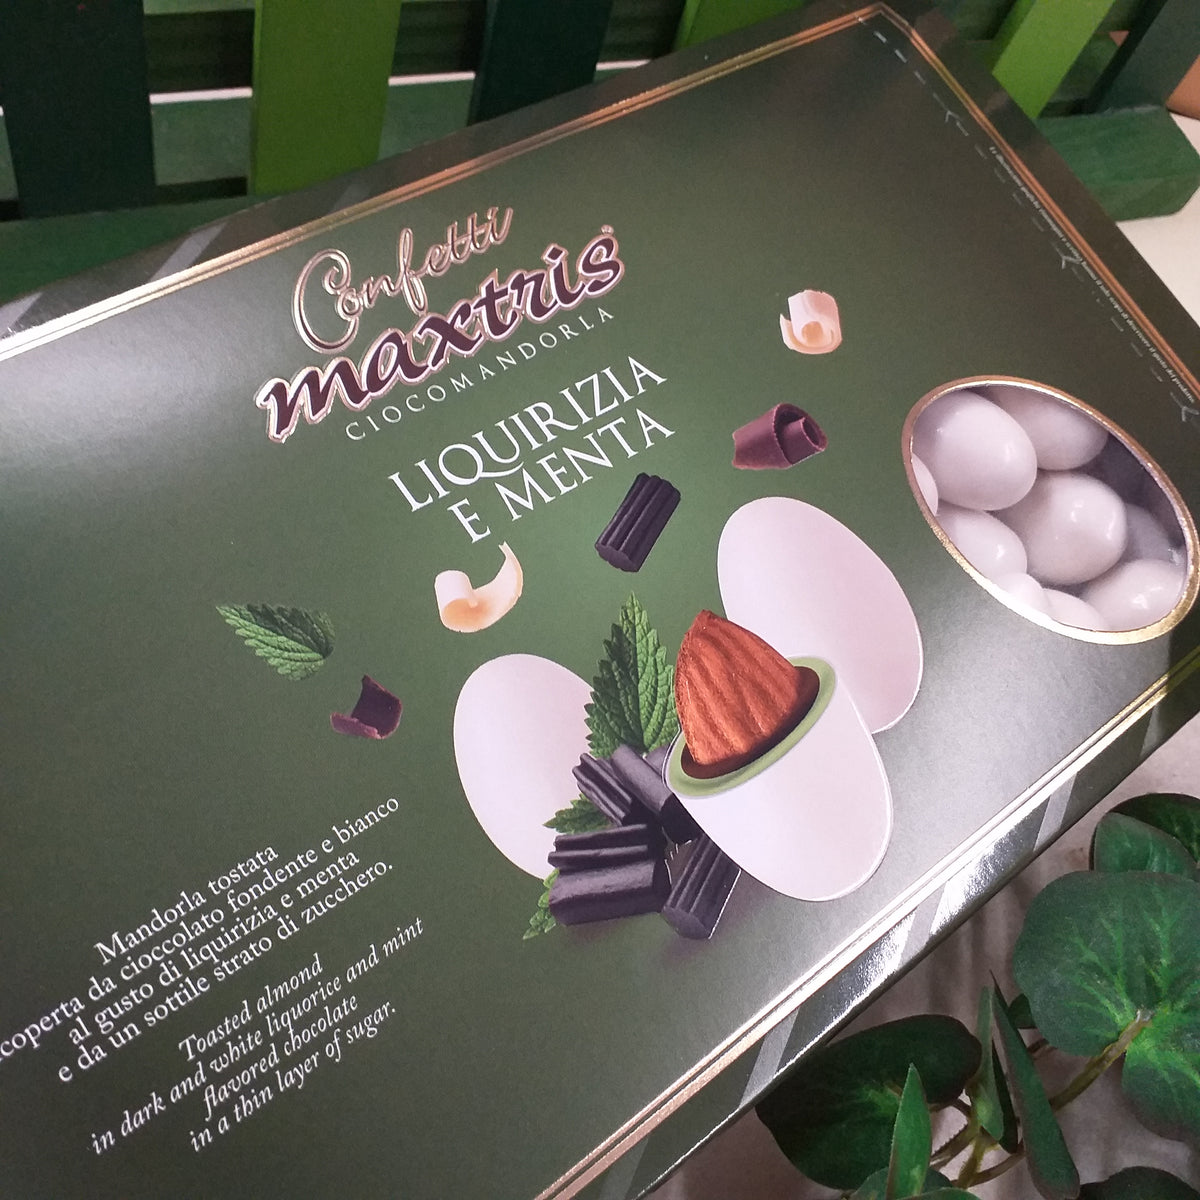 Confetti maxtris verdi al cioccolato offerta online